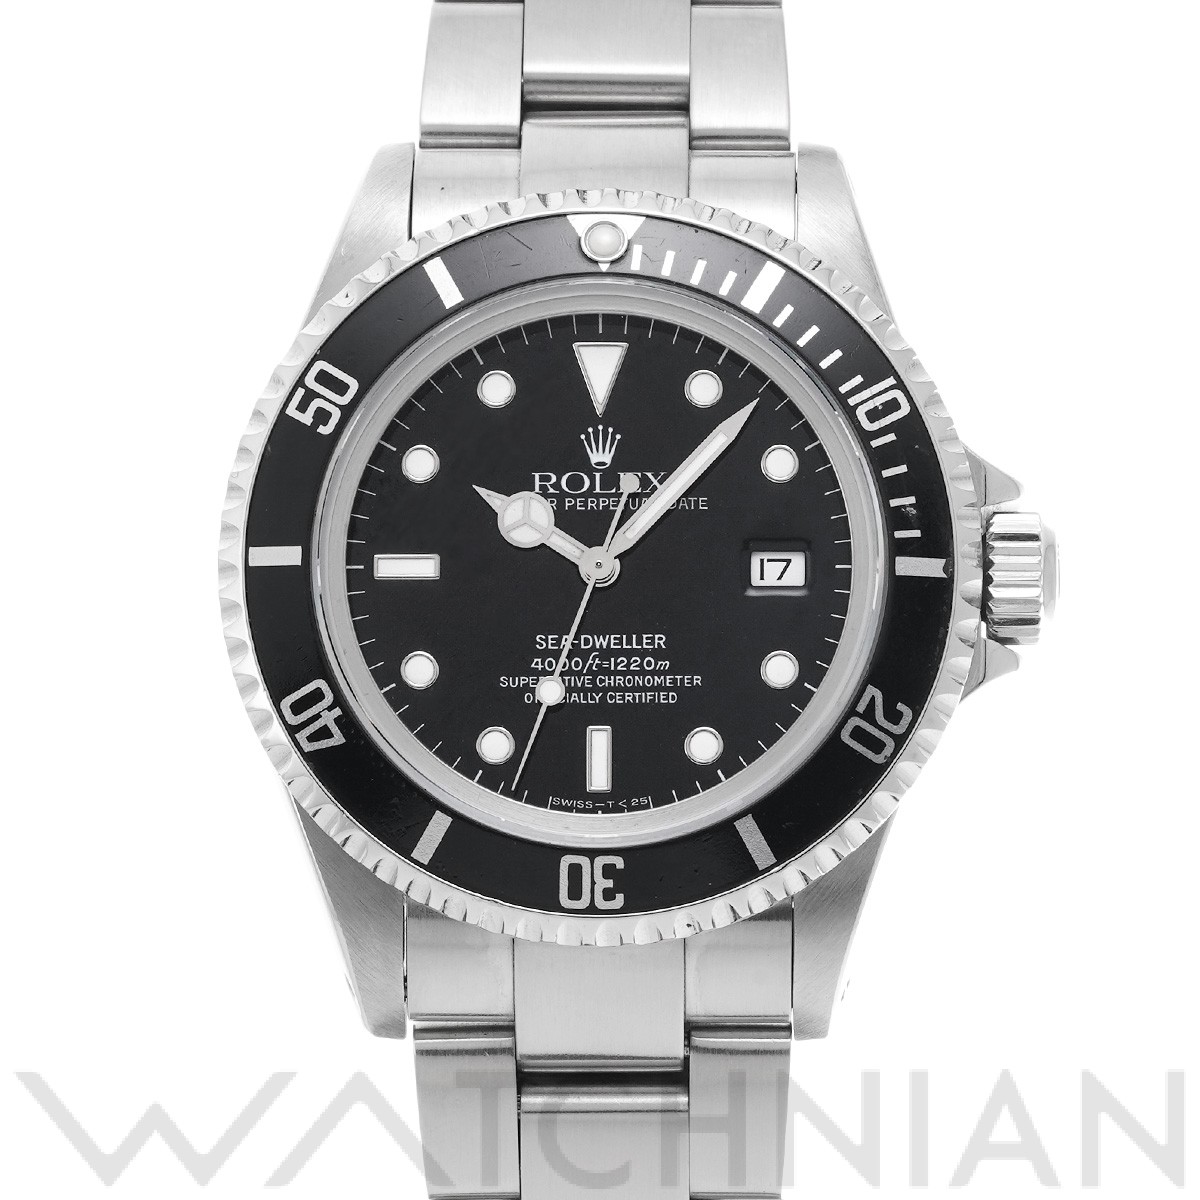 ロレックス シードゥエラー 16600 ブラック メンズ 時計 【中古】【wristwatch】